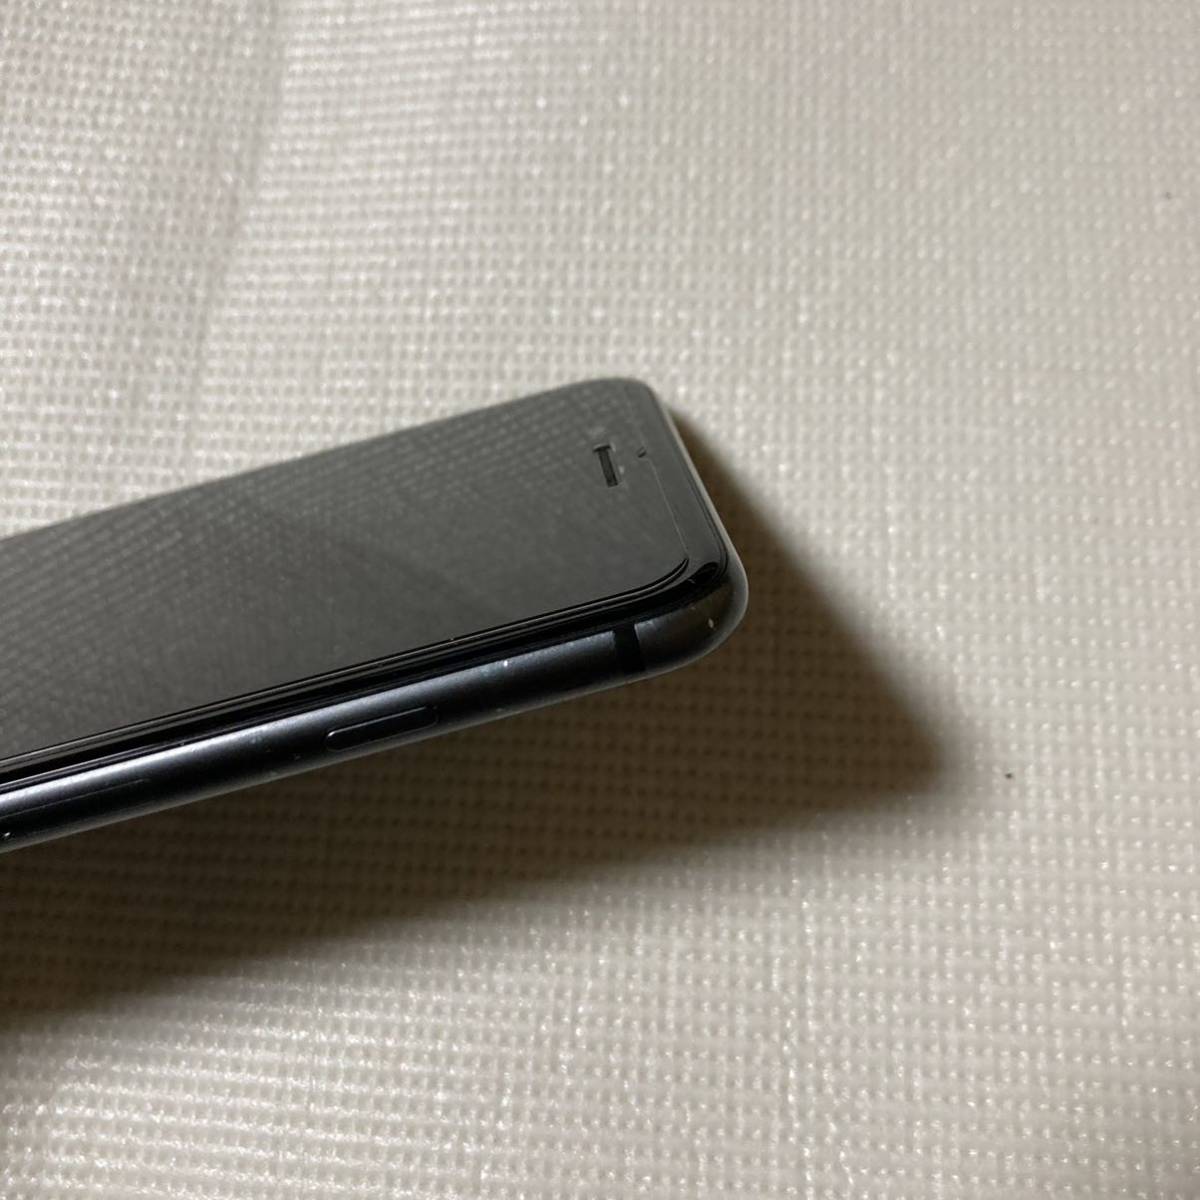 送料無料 SIMフリー iPhone8 Plus 256GB スペースグレー バッテリー最大容量100% SIMロック解除